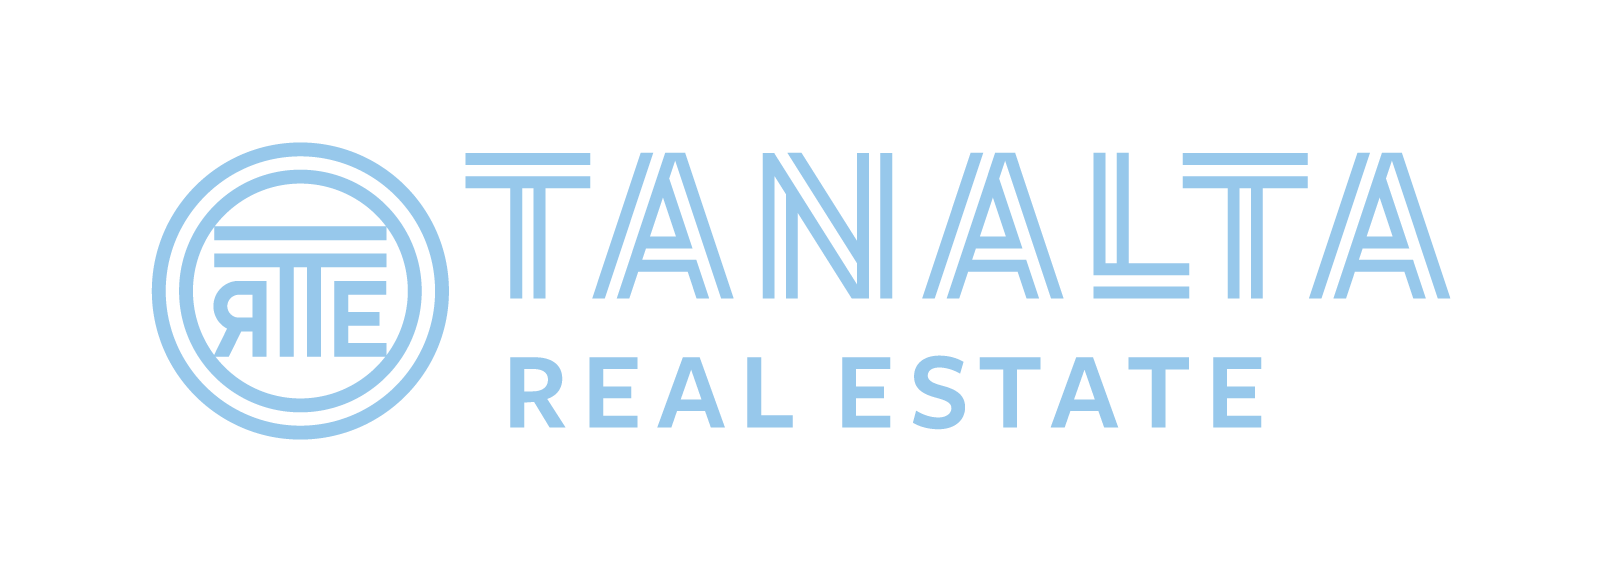 Tanalta | Real Estate